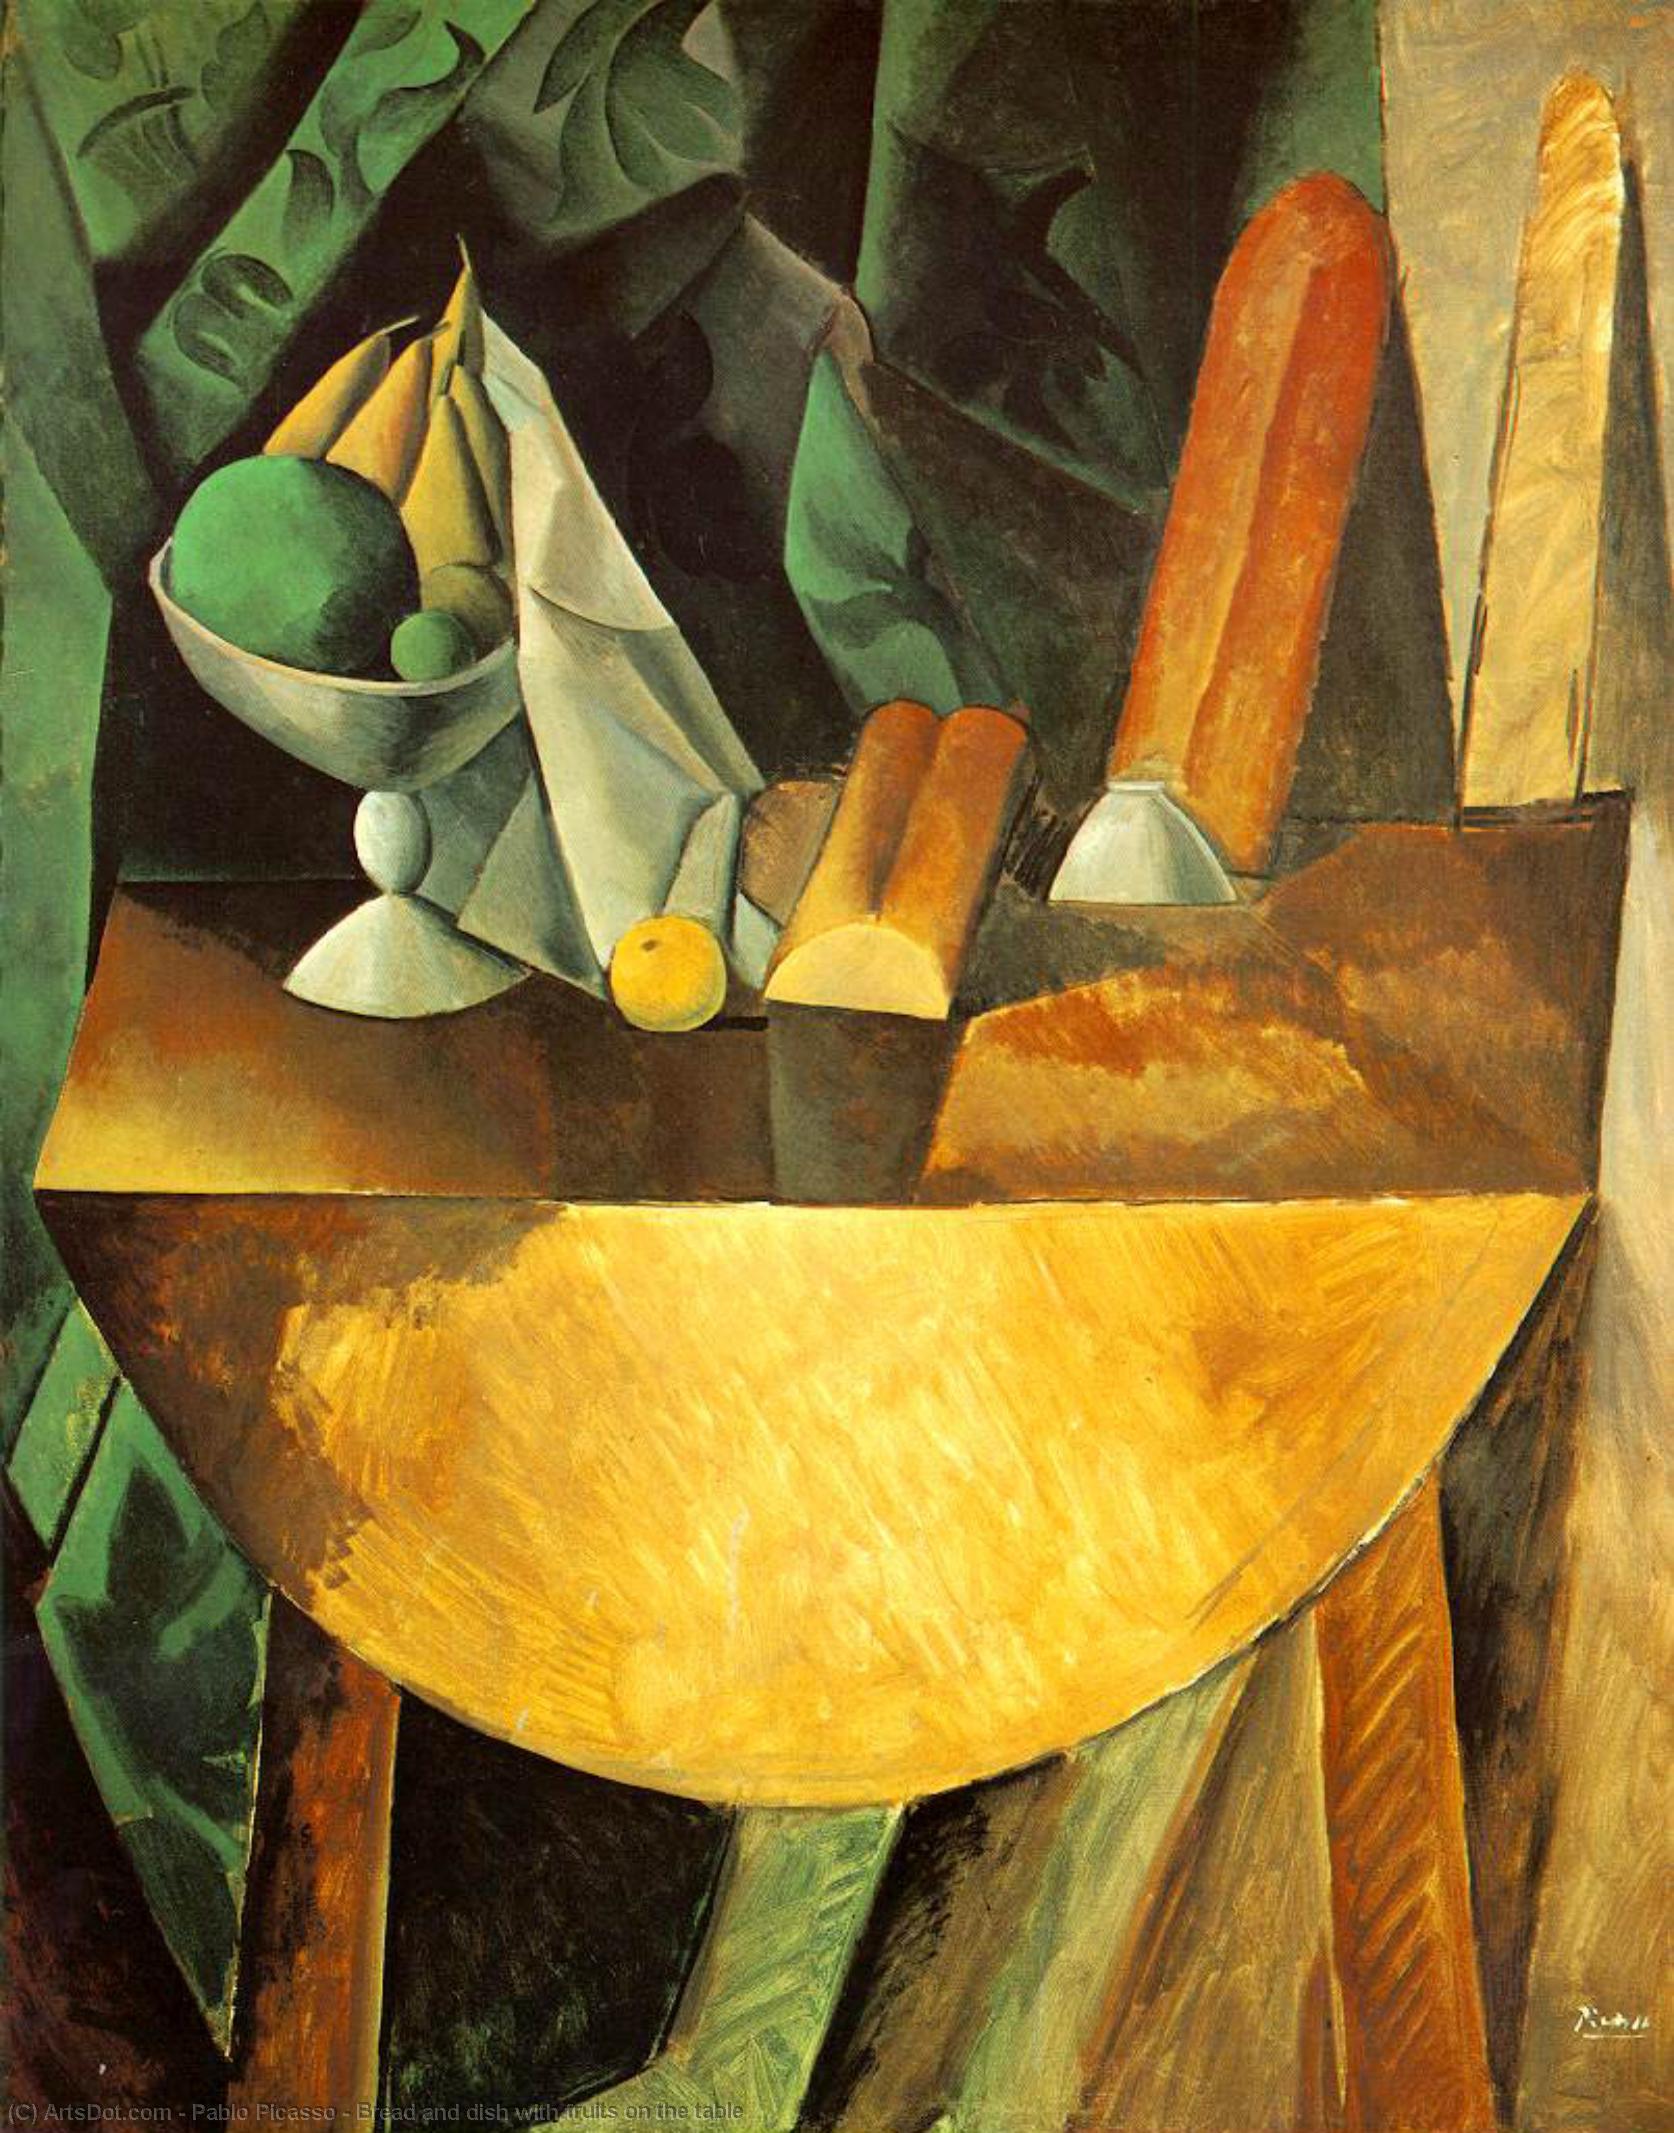 WikiOO.org - Енциклопедия за изящни изкуства - Живопис, Произведения на изкуството Pablo Picasso - Bread and dish with fruits on the table